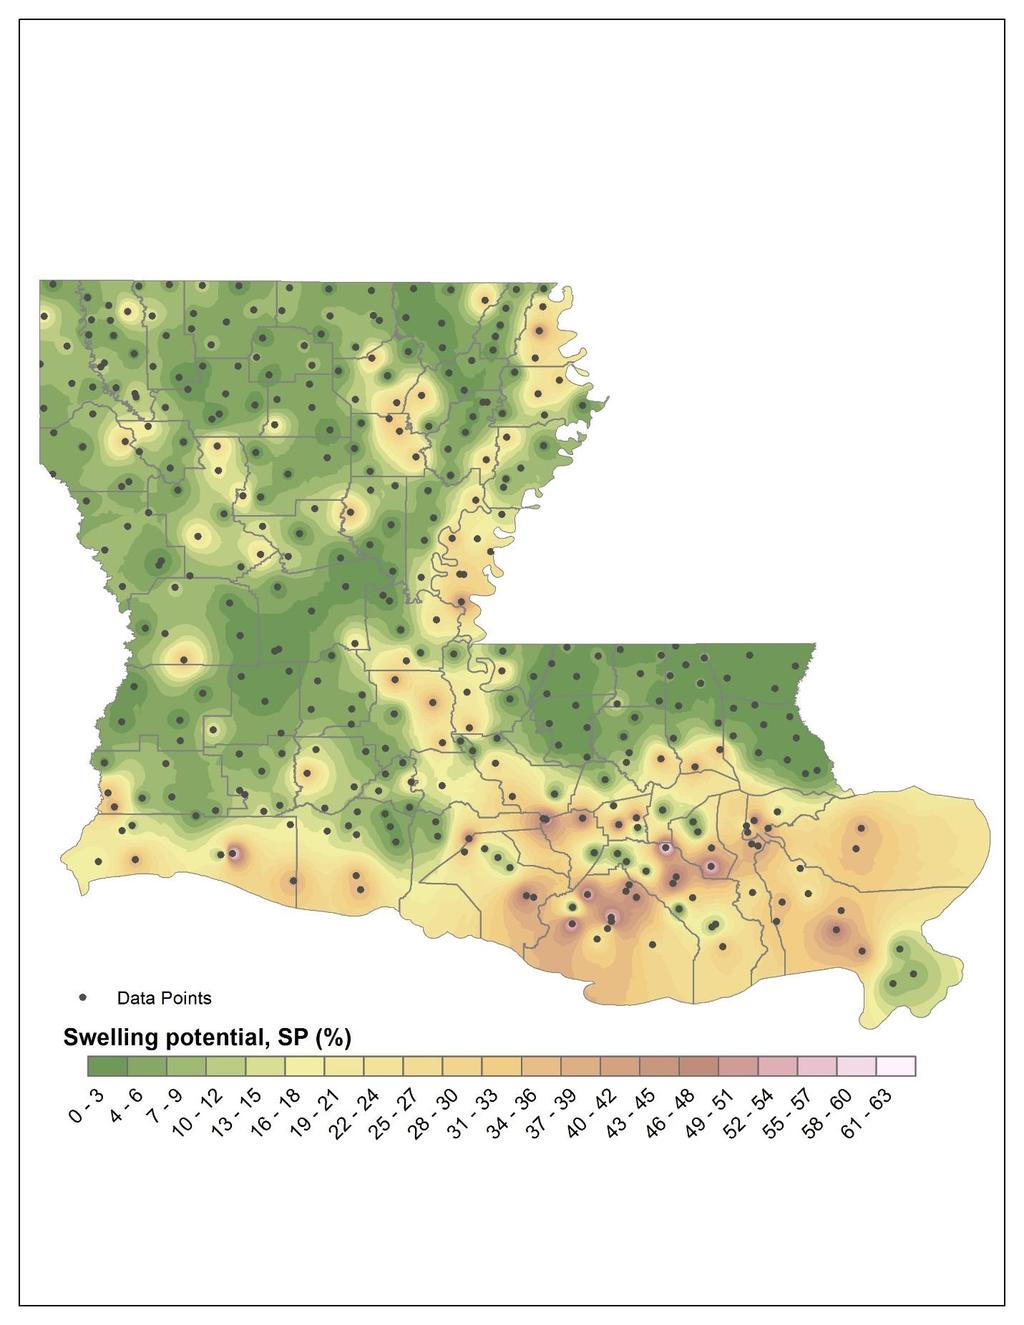 Figure 1 SP Map of Louisiana